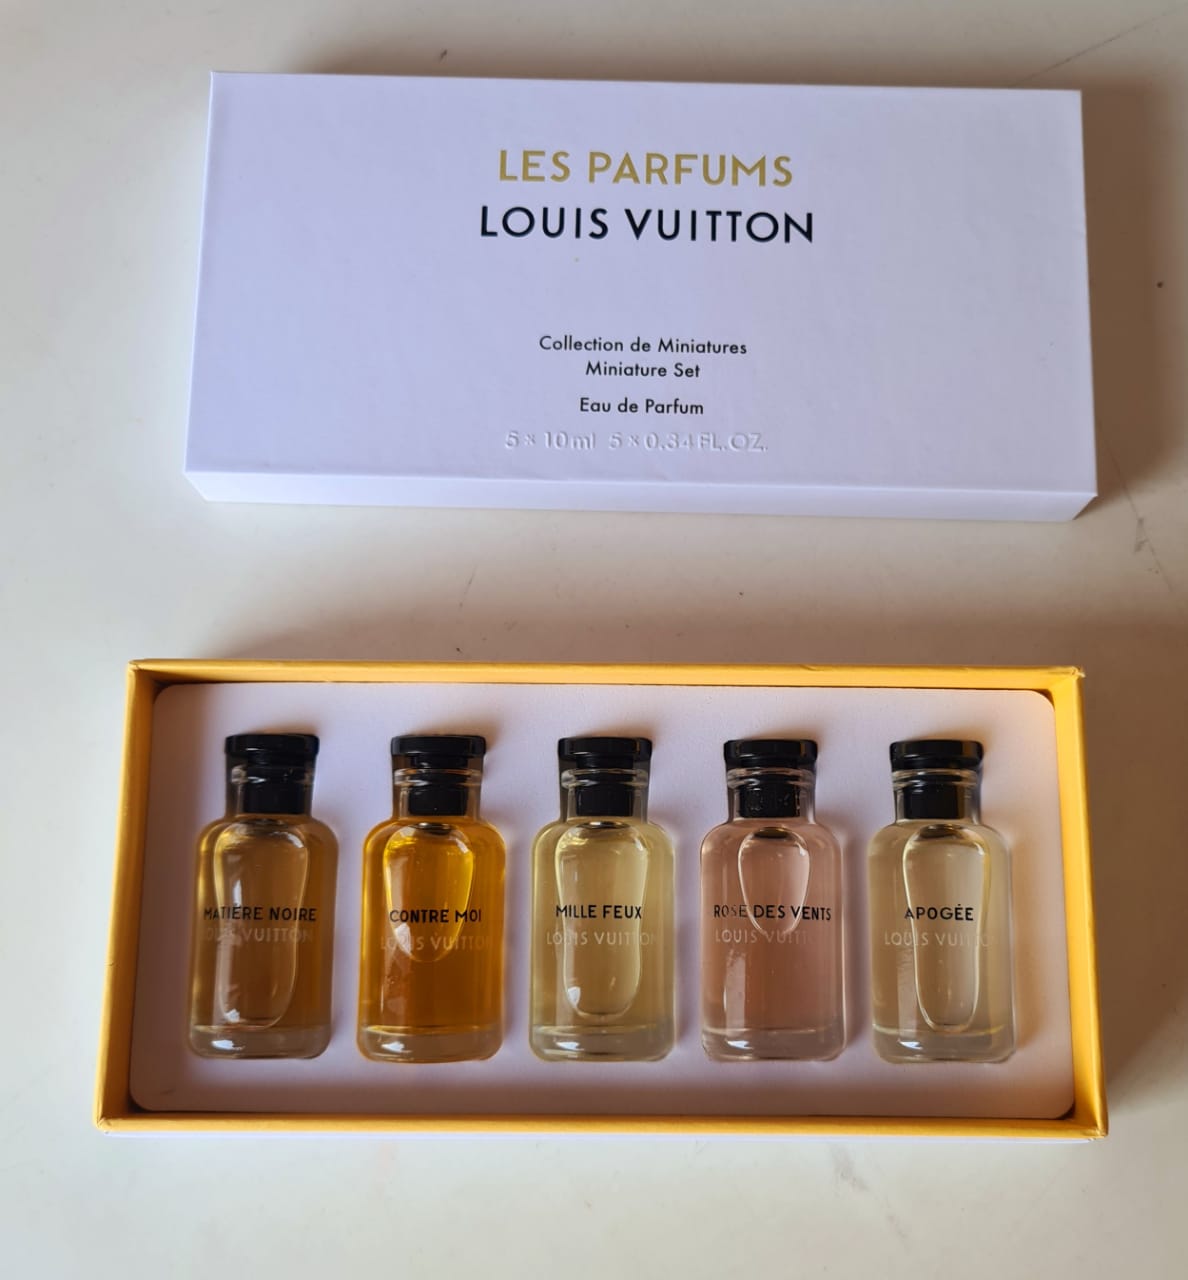 Louis Vuitton Perfume 10 ml 7 Miniature Set - Rose Des Vents Le Jour Se  Lève NWB